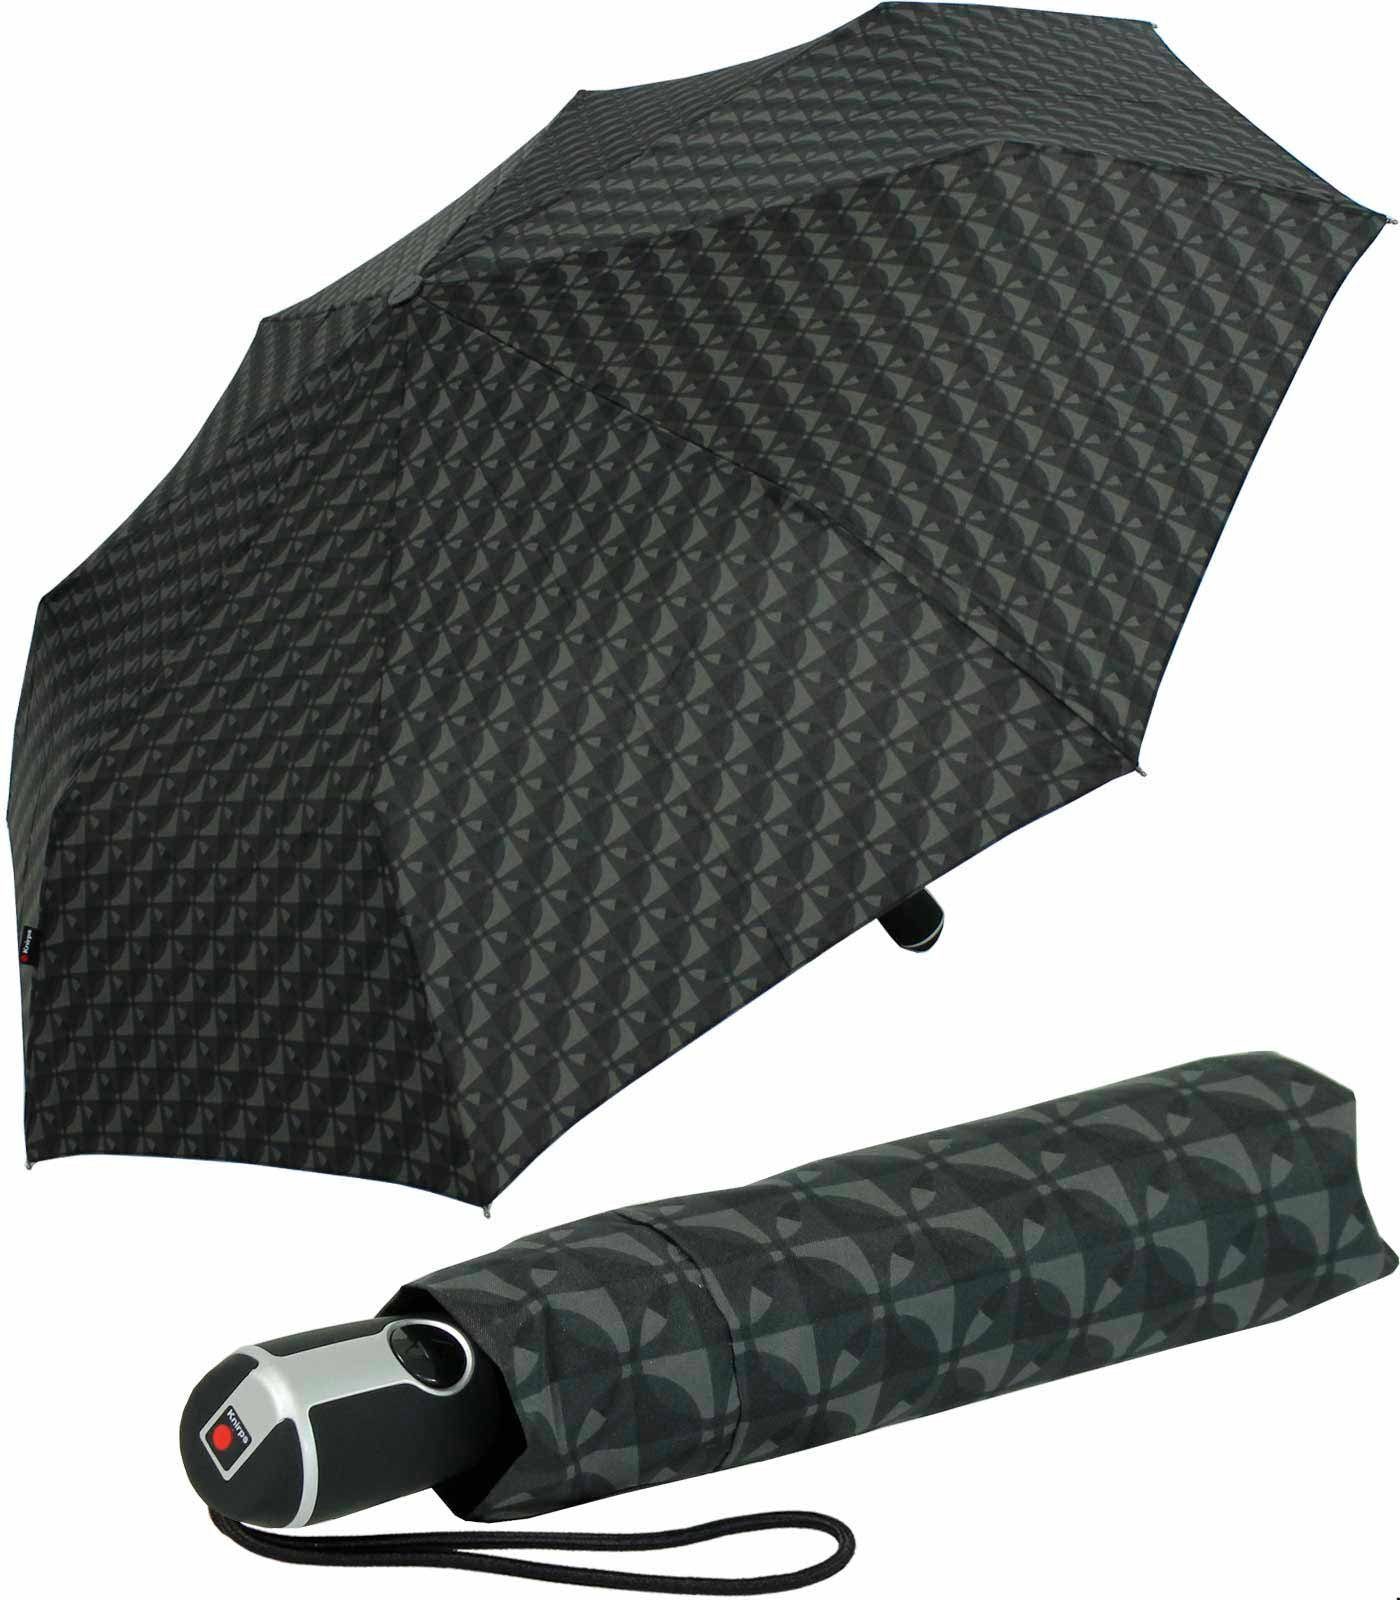 Knirps® Taschenregenschirm Large Duomatic mit Auf-Zu-Automatik - Nimbus black, der große, stabile Begleiter